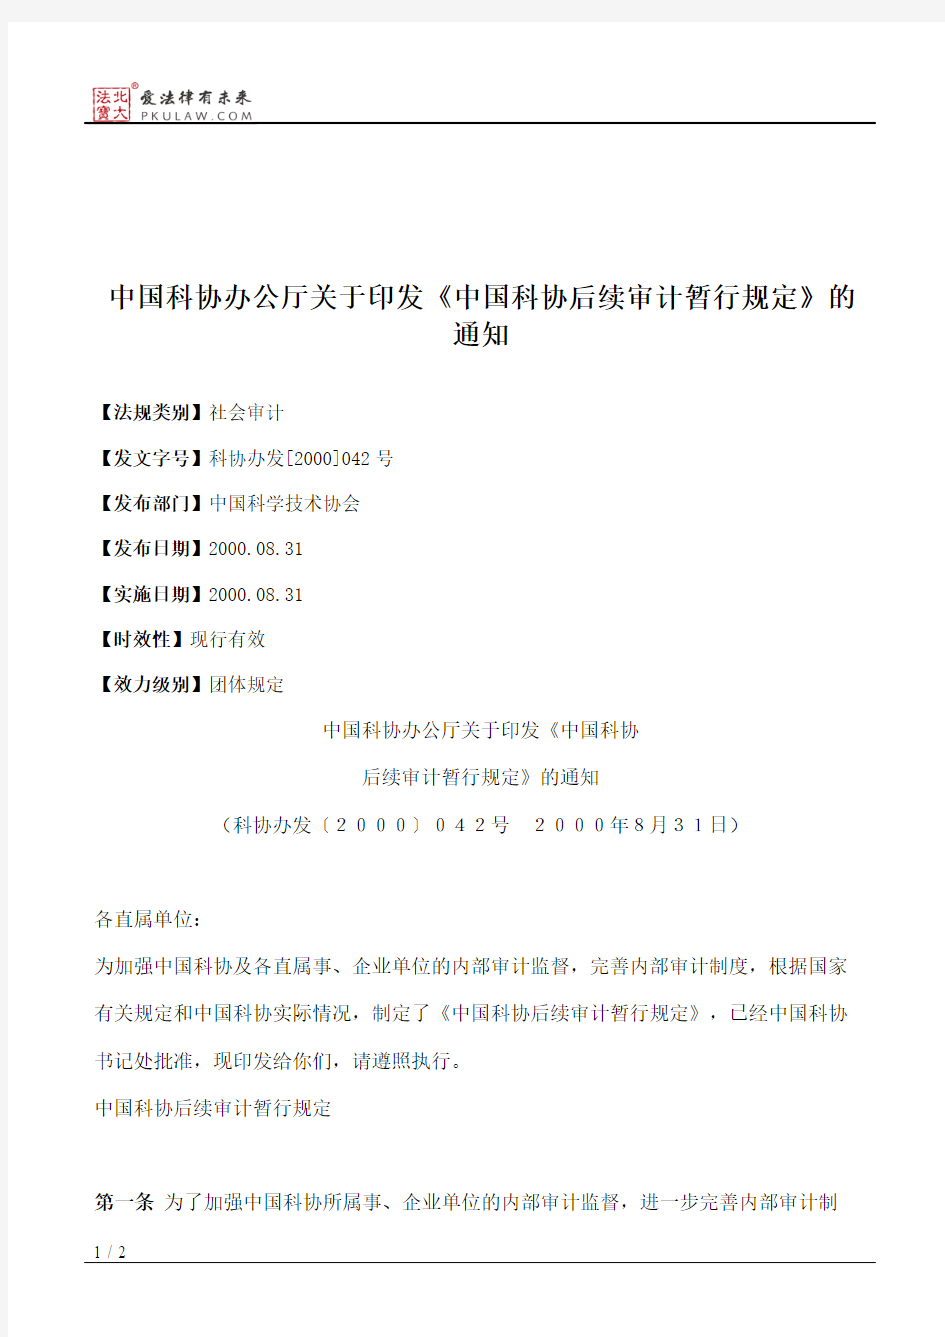 中国科协办公厅关于印发《中国科协后续审计暂行规定》的通知